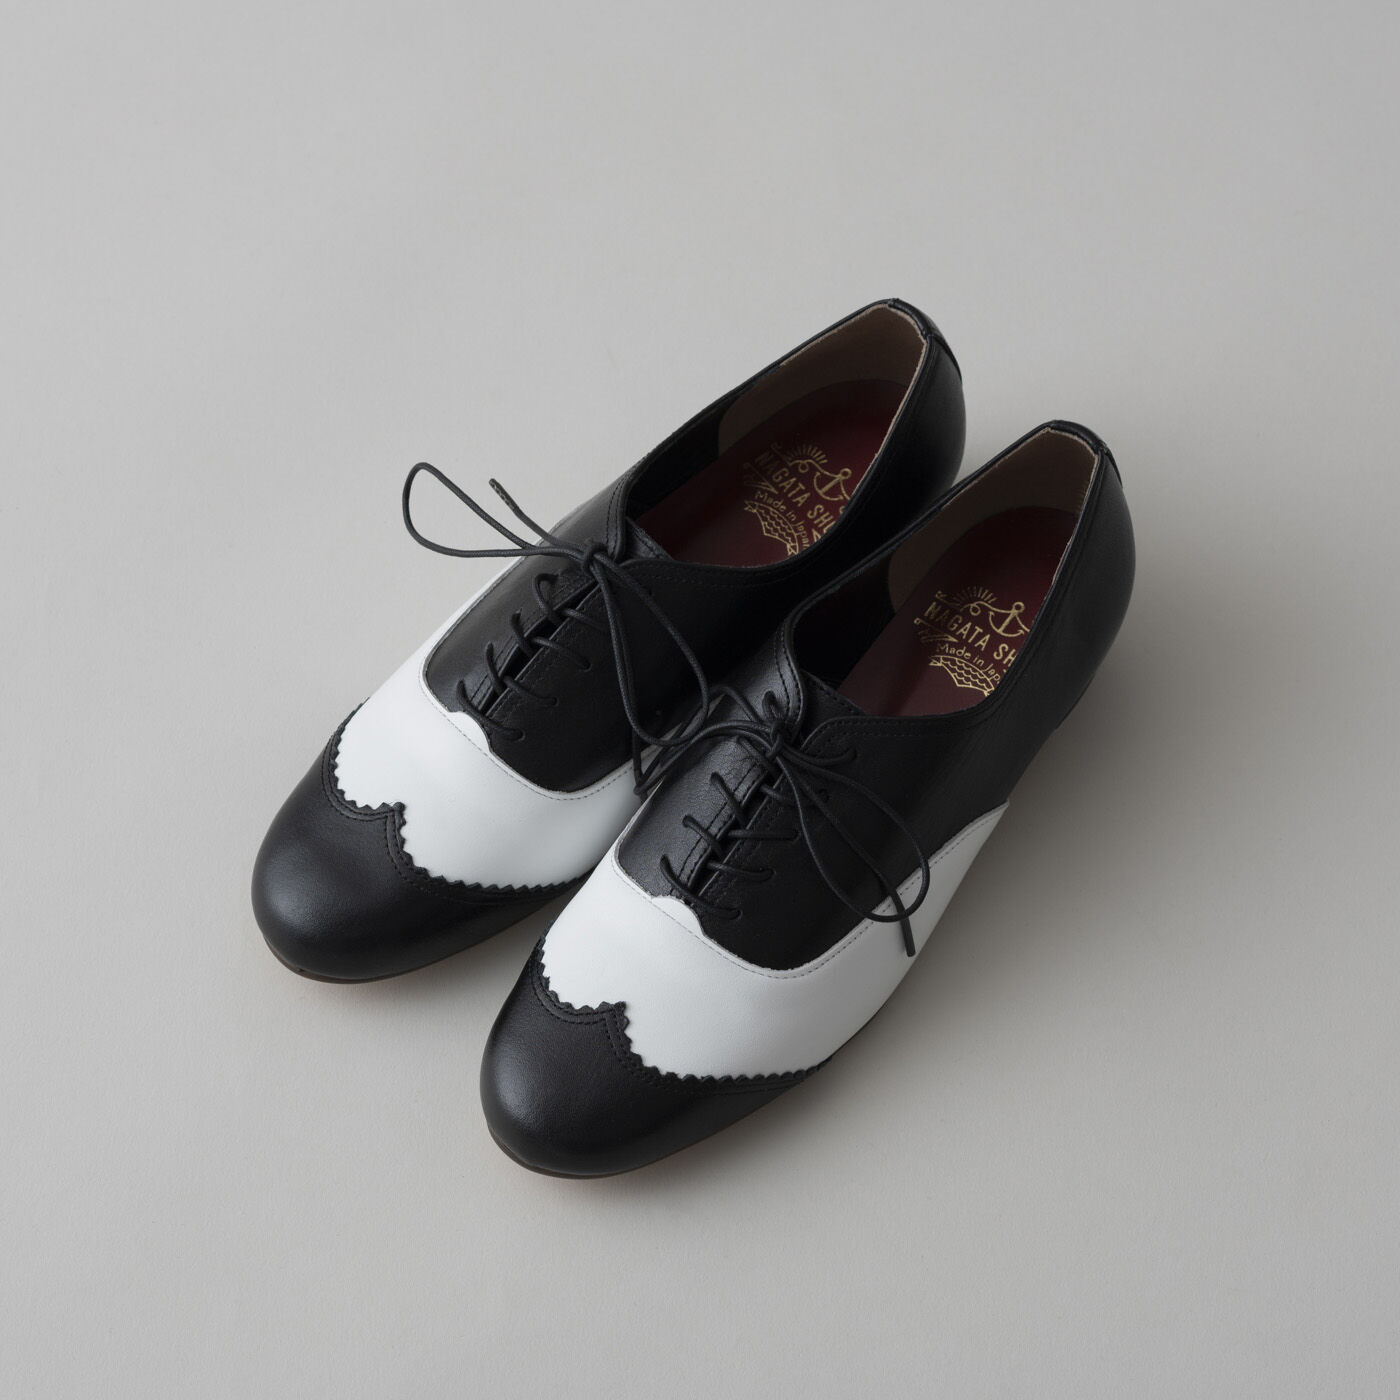 ＆Stories|長田の靴メーカーと作った　職人本革のレースアップシューズ〈ブラック×ホワイト〉|幅広・甲高の足も気持ちよく包み込むデザイン。